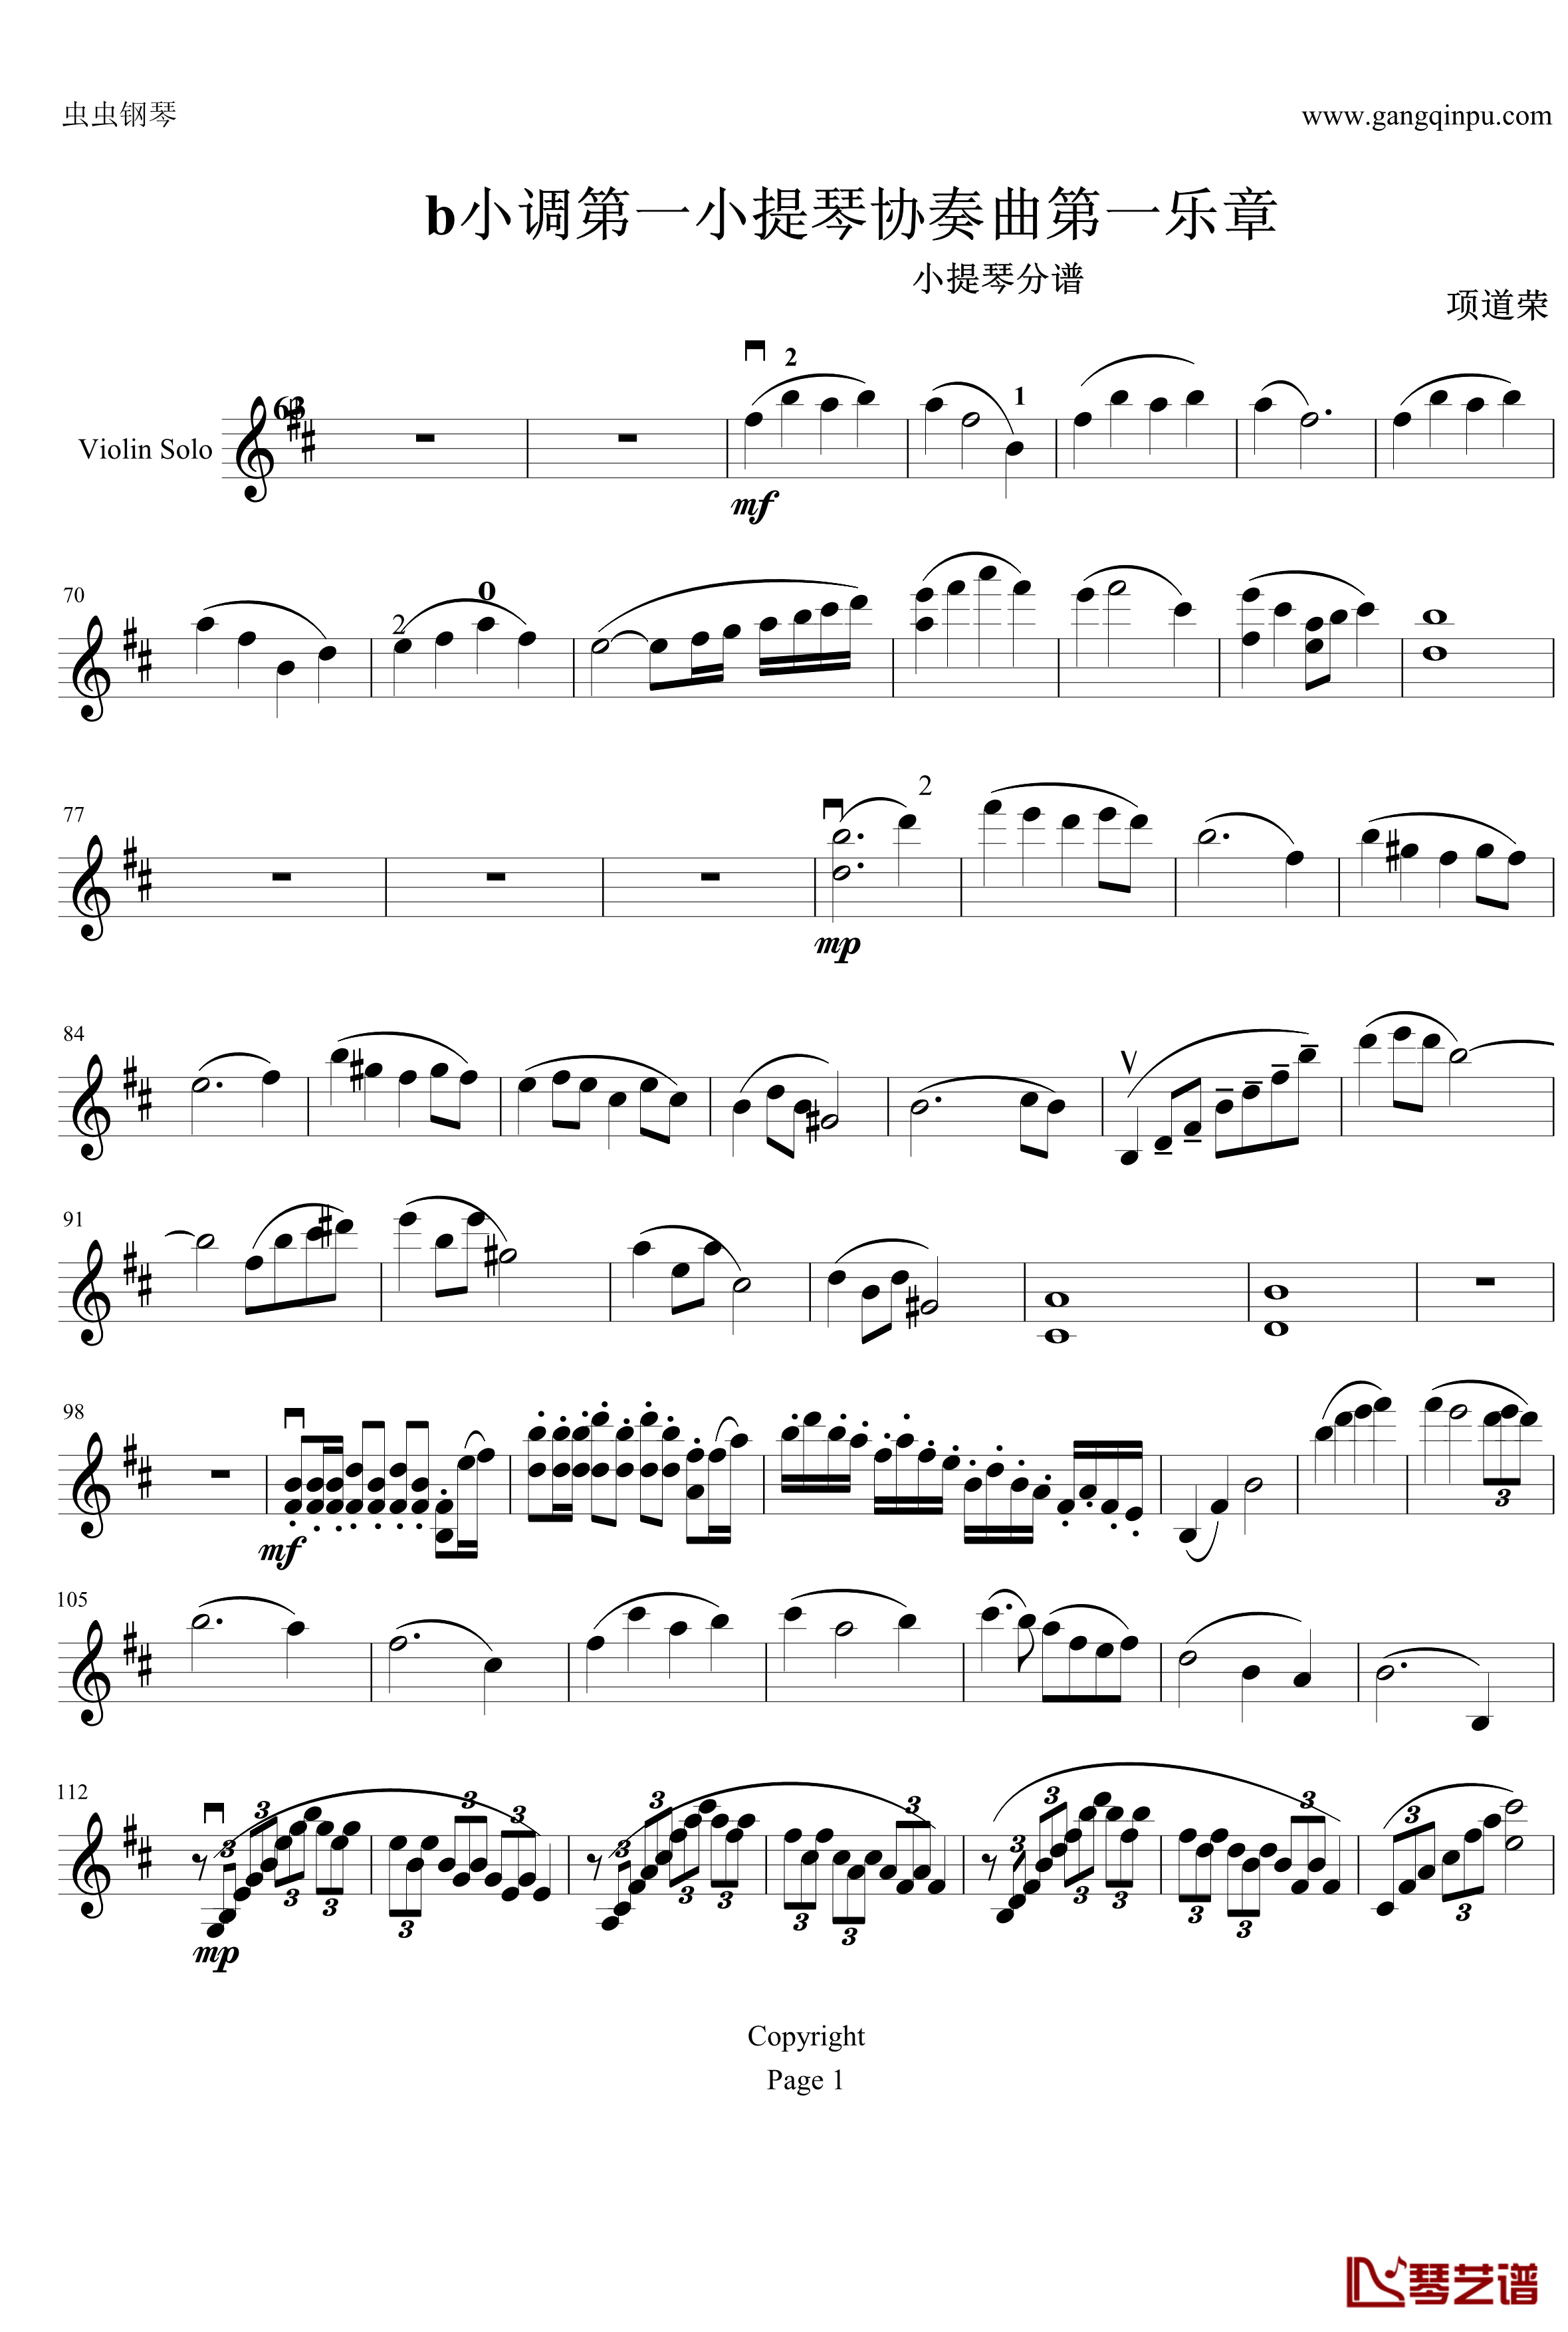 云南风情钢琴谱-第一乐章-b小调小提琴协奏曲-项道荣1